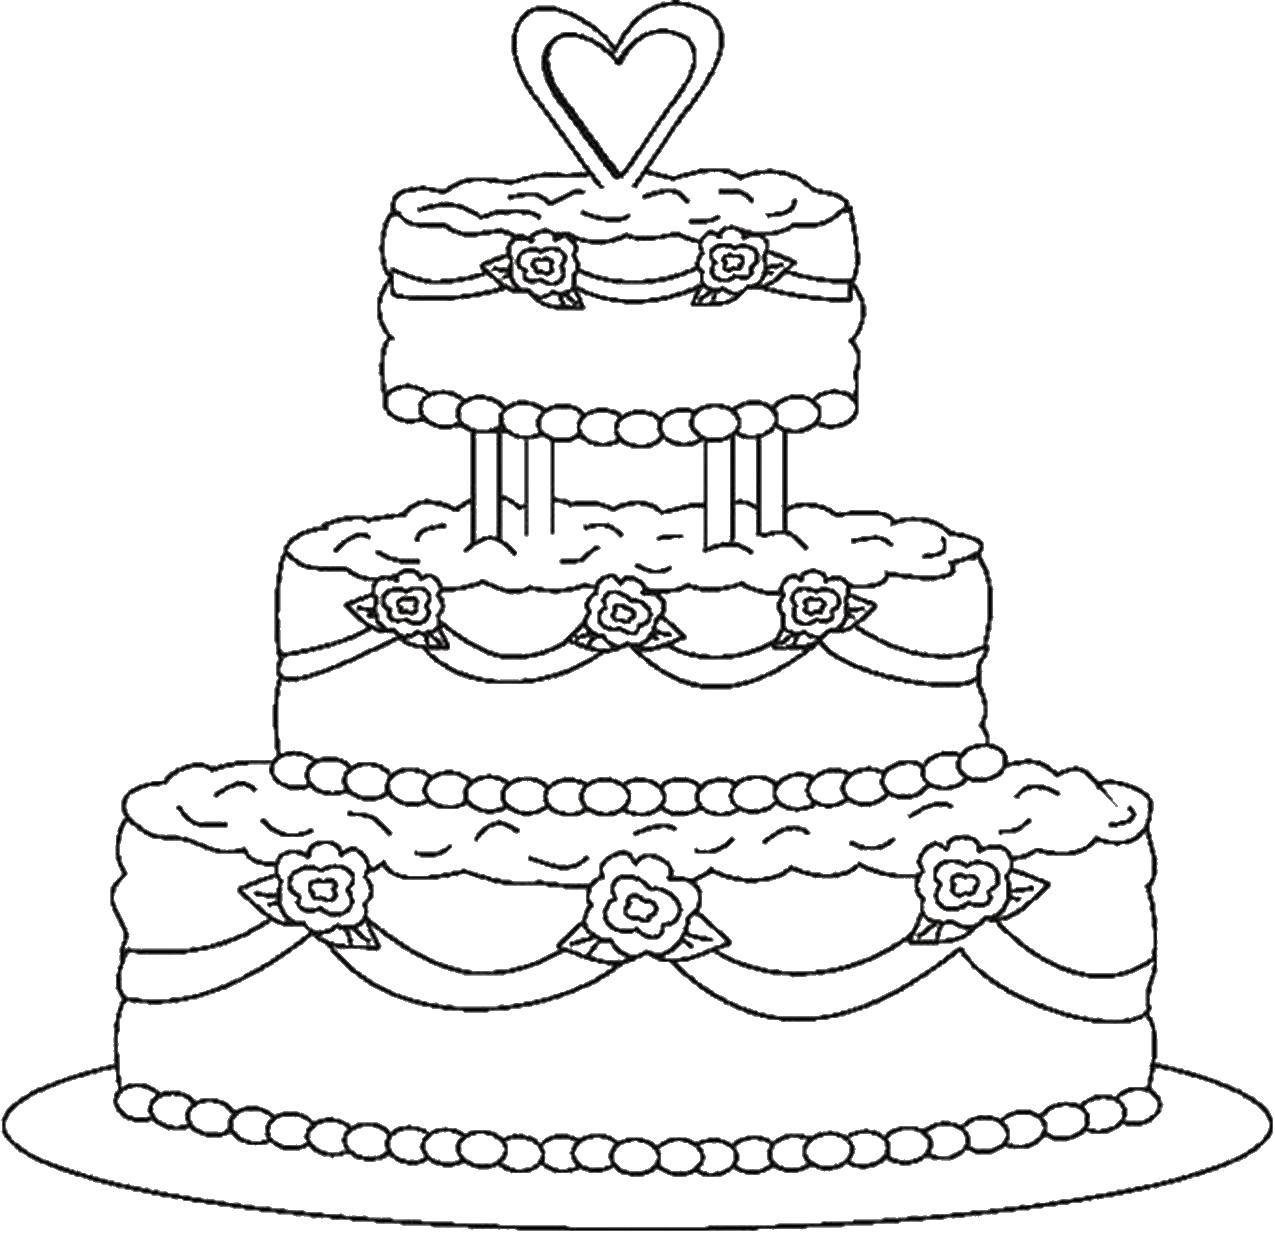 Раскраска торта для свадьбы (Торты)